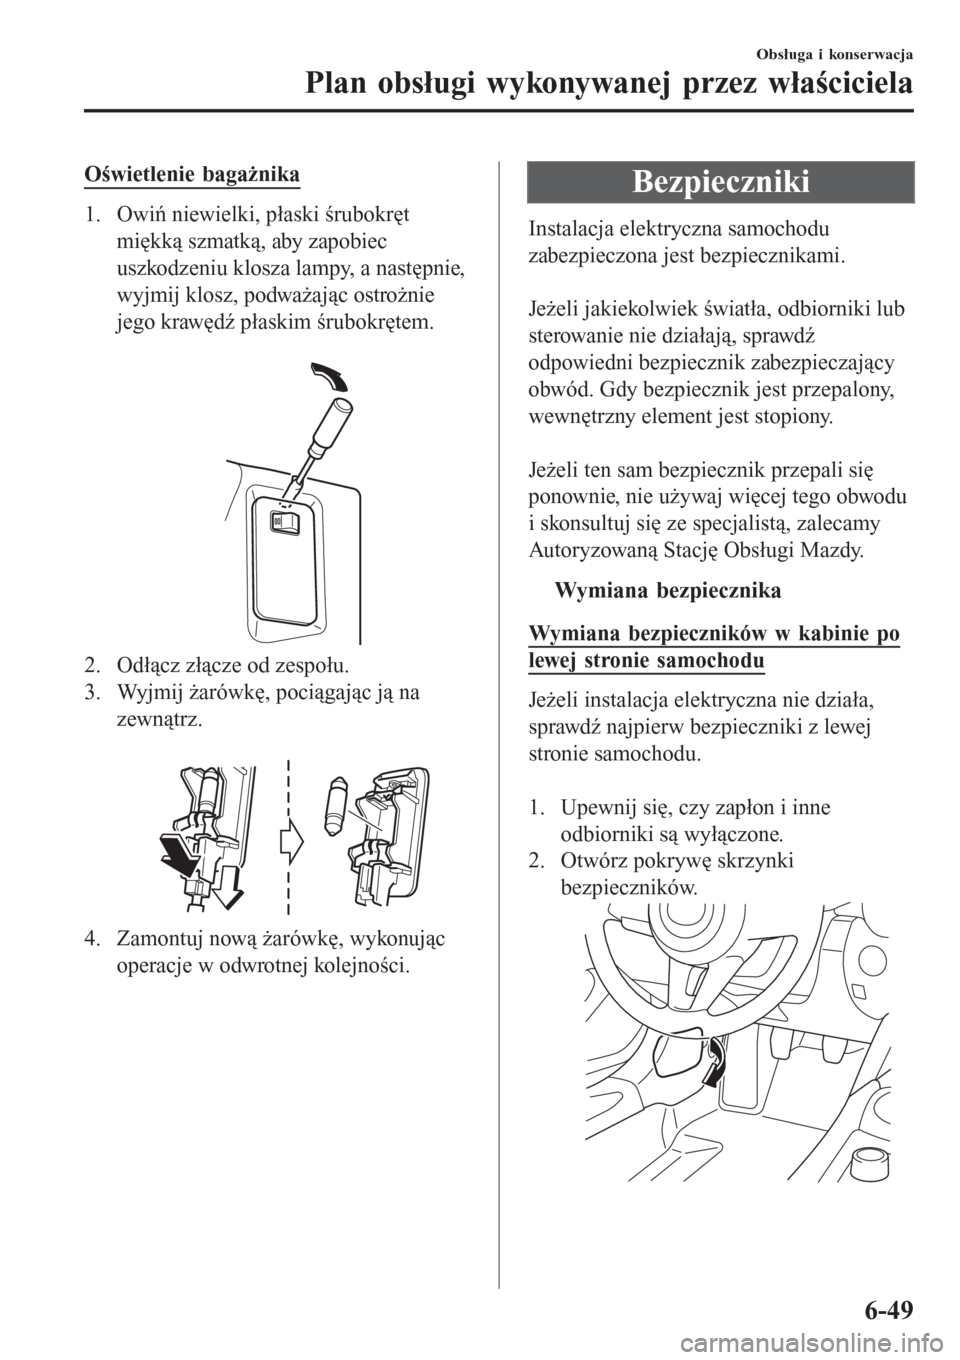 MAZDA MODEL MX-5 2015  Instrukcja Obsługi (in Polish) Oświetlenie bagażnika
1. Owiń niewielki, płaski śrubokręt
miękką szmatką, aby zapobiec
uszkodzeniu klosza lampy, a następnie,
wyjmij klosz, podważając ostrożnie
jego krawędź płaskim ś